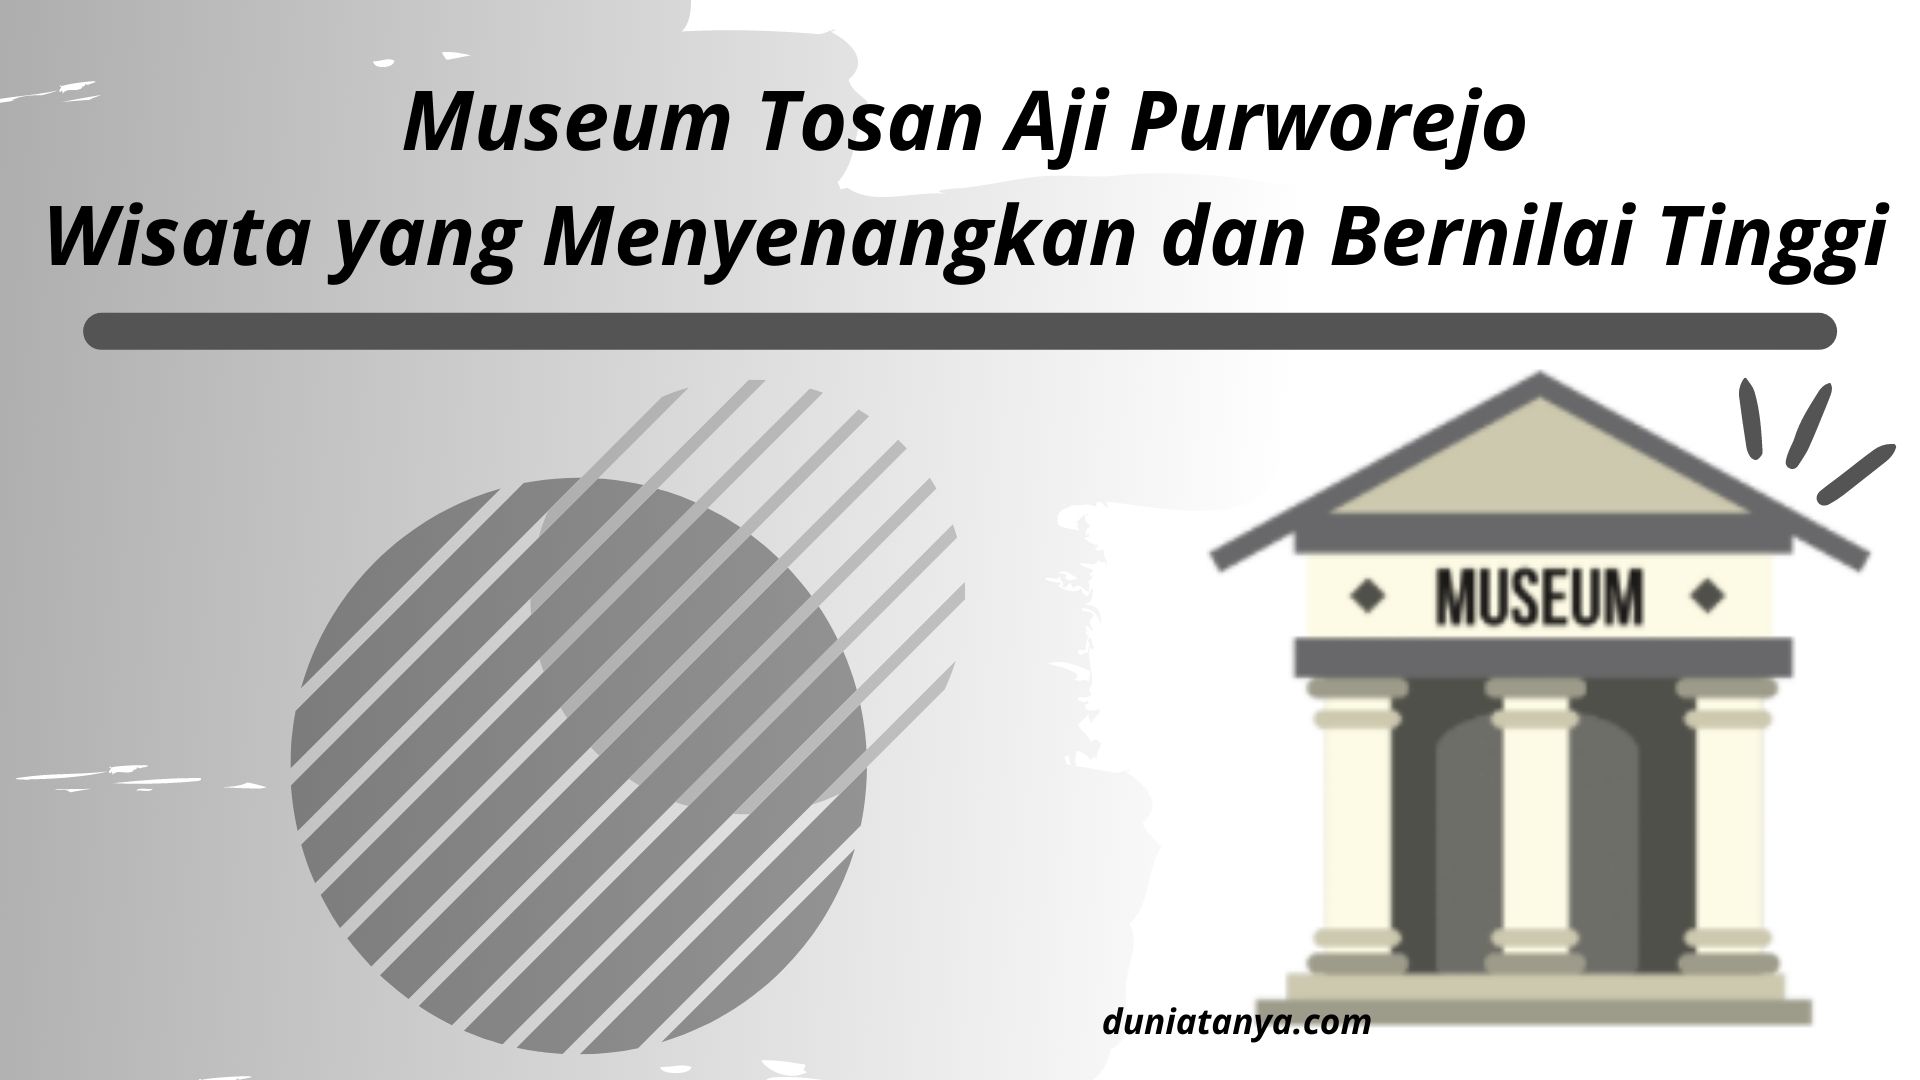 You are currently viewing Museum Tosan Aji Purworejo,Wisata yang Menyenangkan dan Bernilai Tinggi